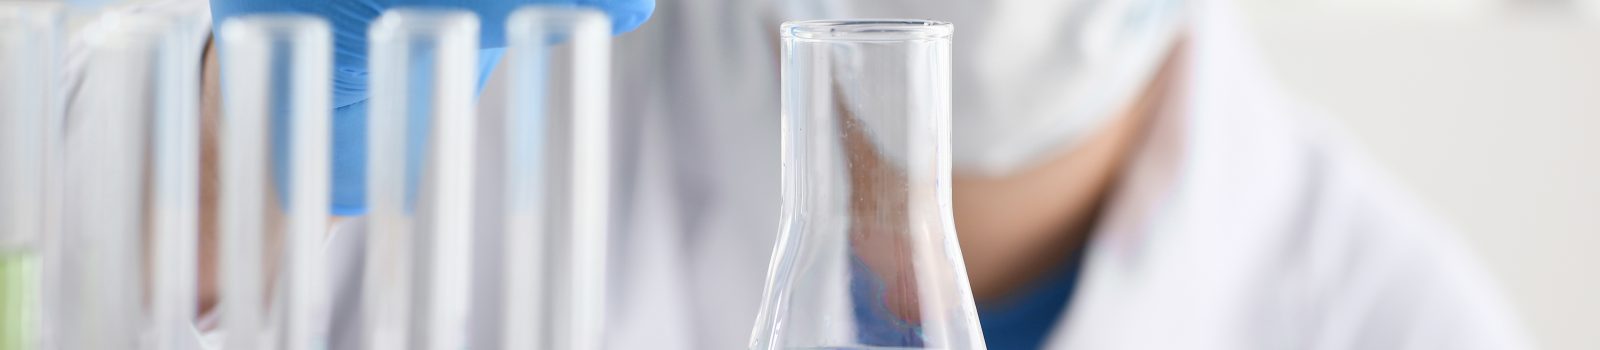 En kemist håller en pipett mot ett glas